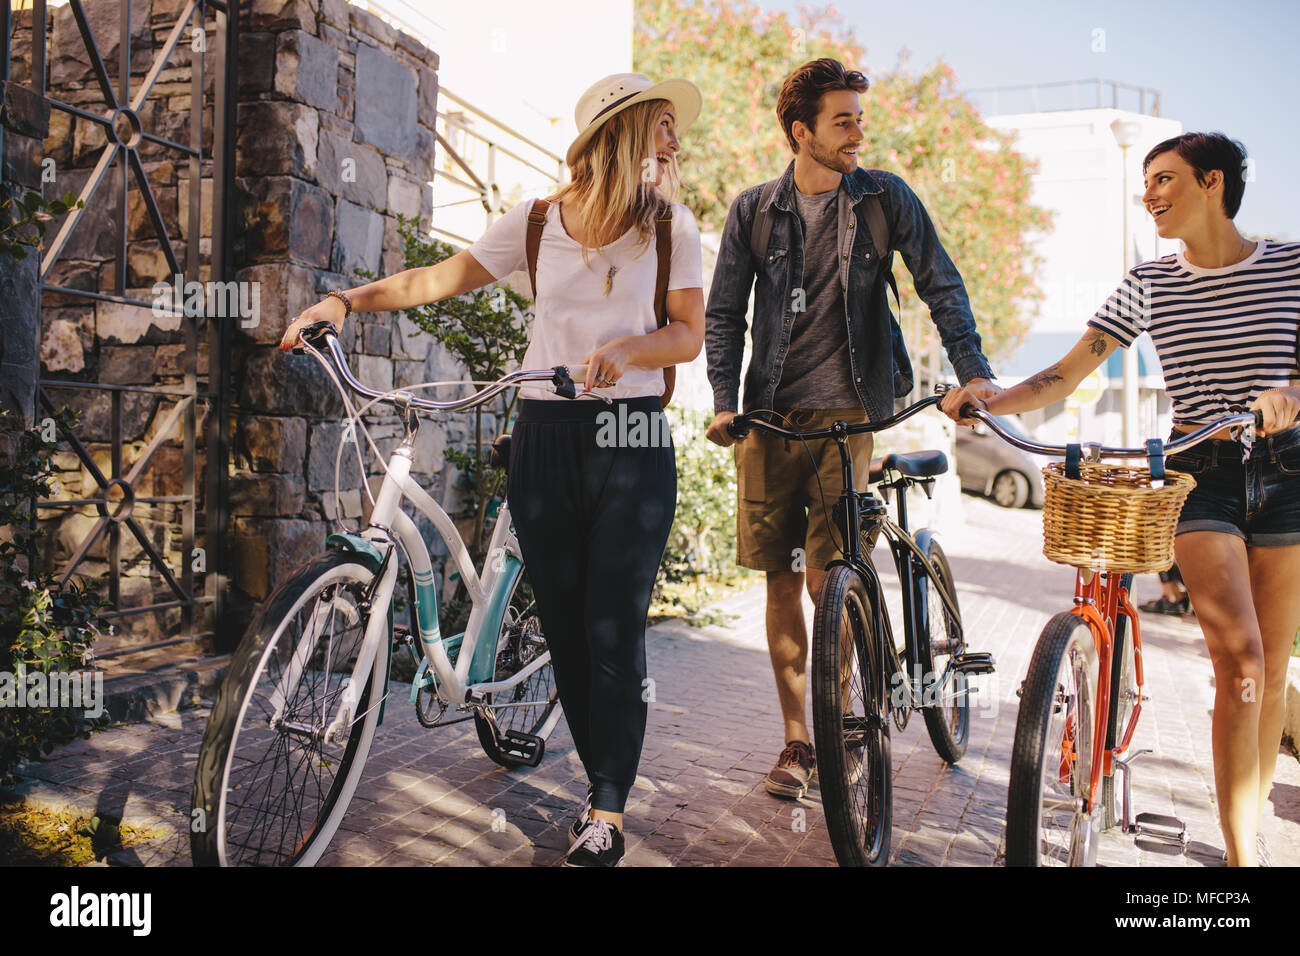 Drei junge Freunde zusammen gehen, Spaß zu haben. Junge Menschen mit Fahrrädern zu Fuß draußen in der Stadt. Stockfoto